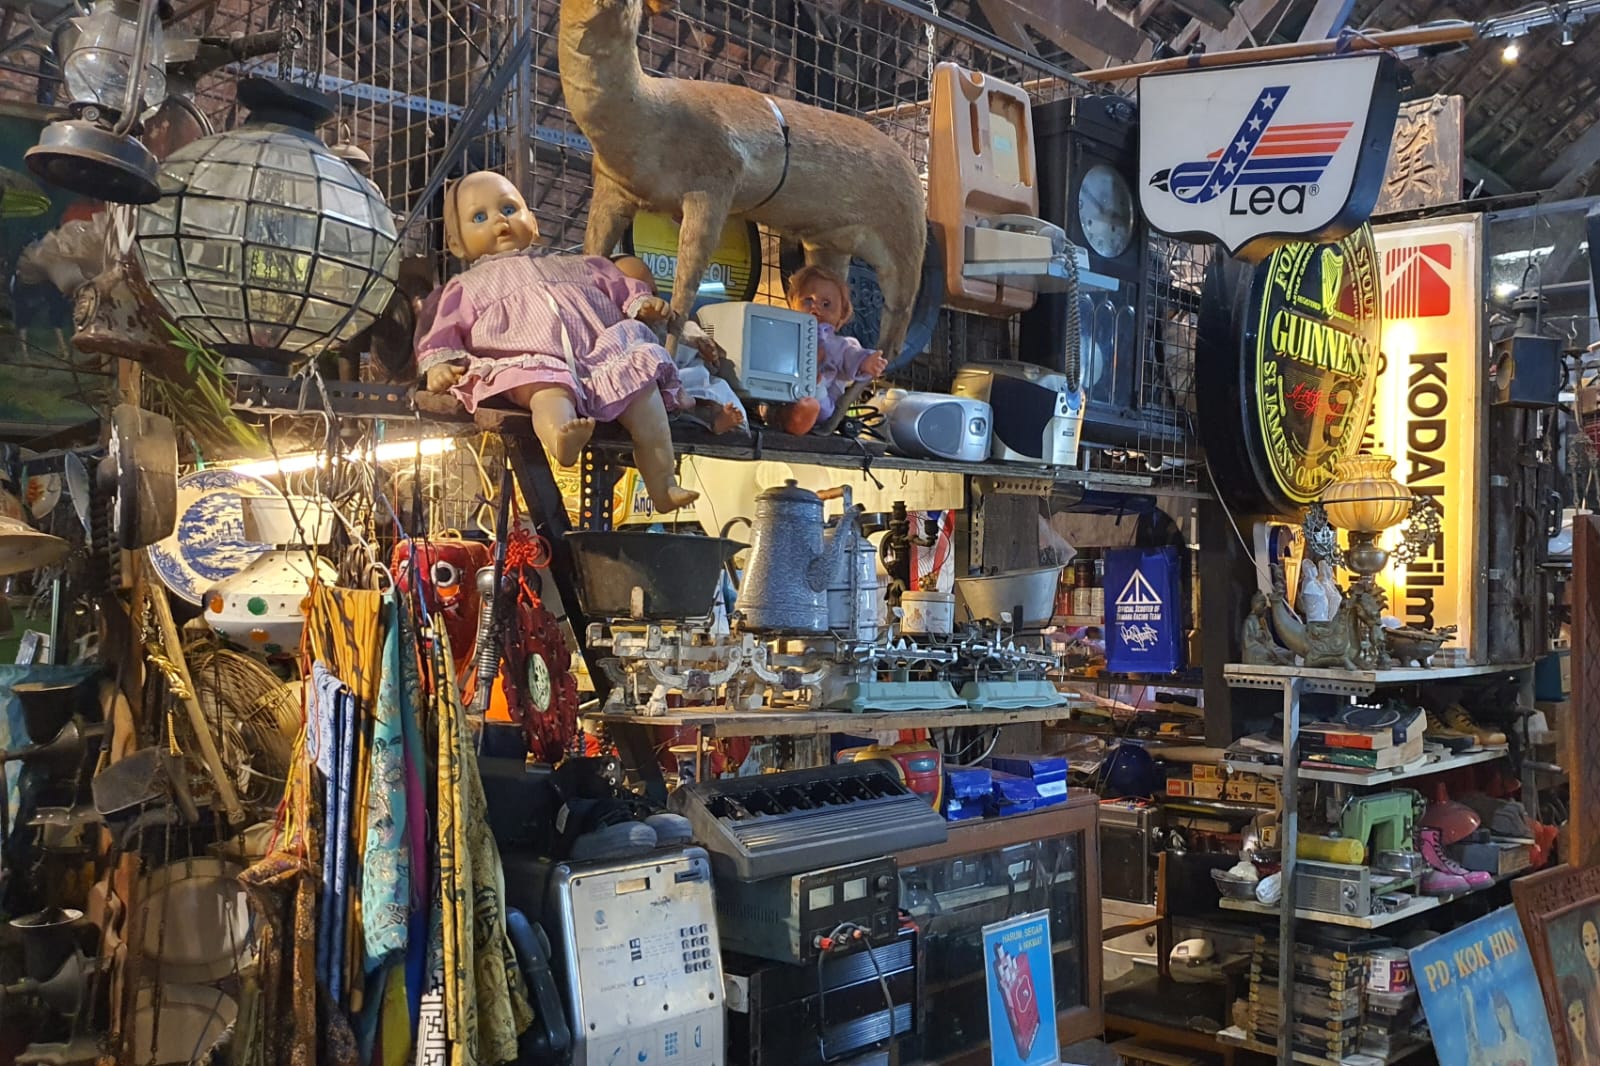 Pasar Antik Kota Lama Semarang, Destinasi Wisata Belanja Barang Vintage